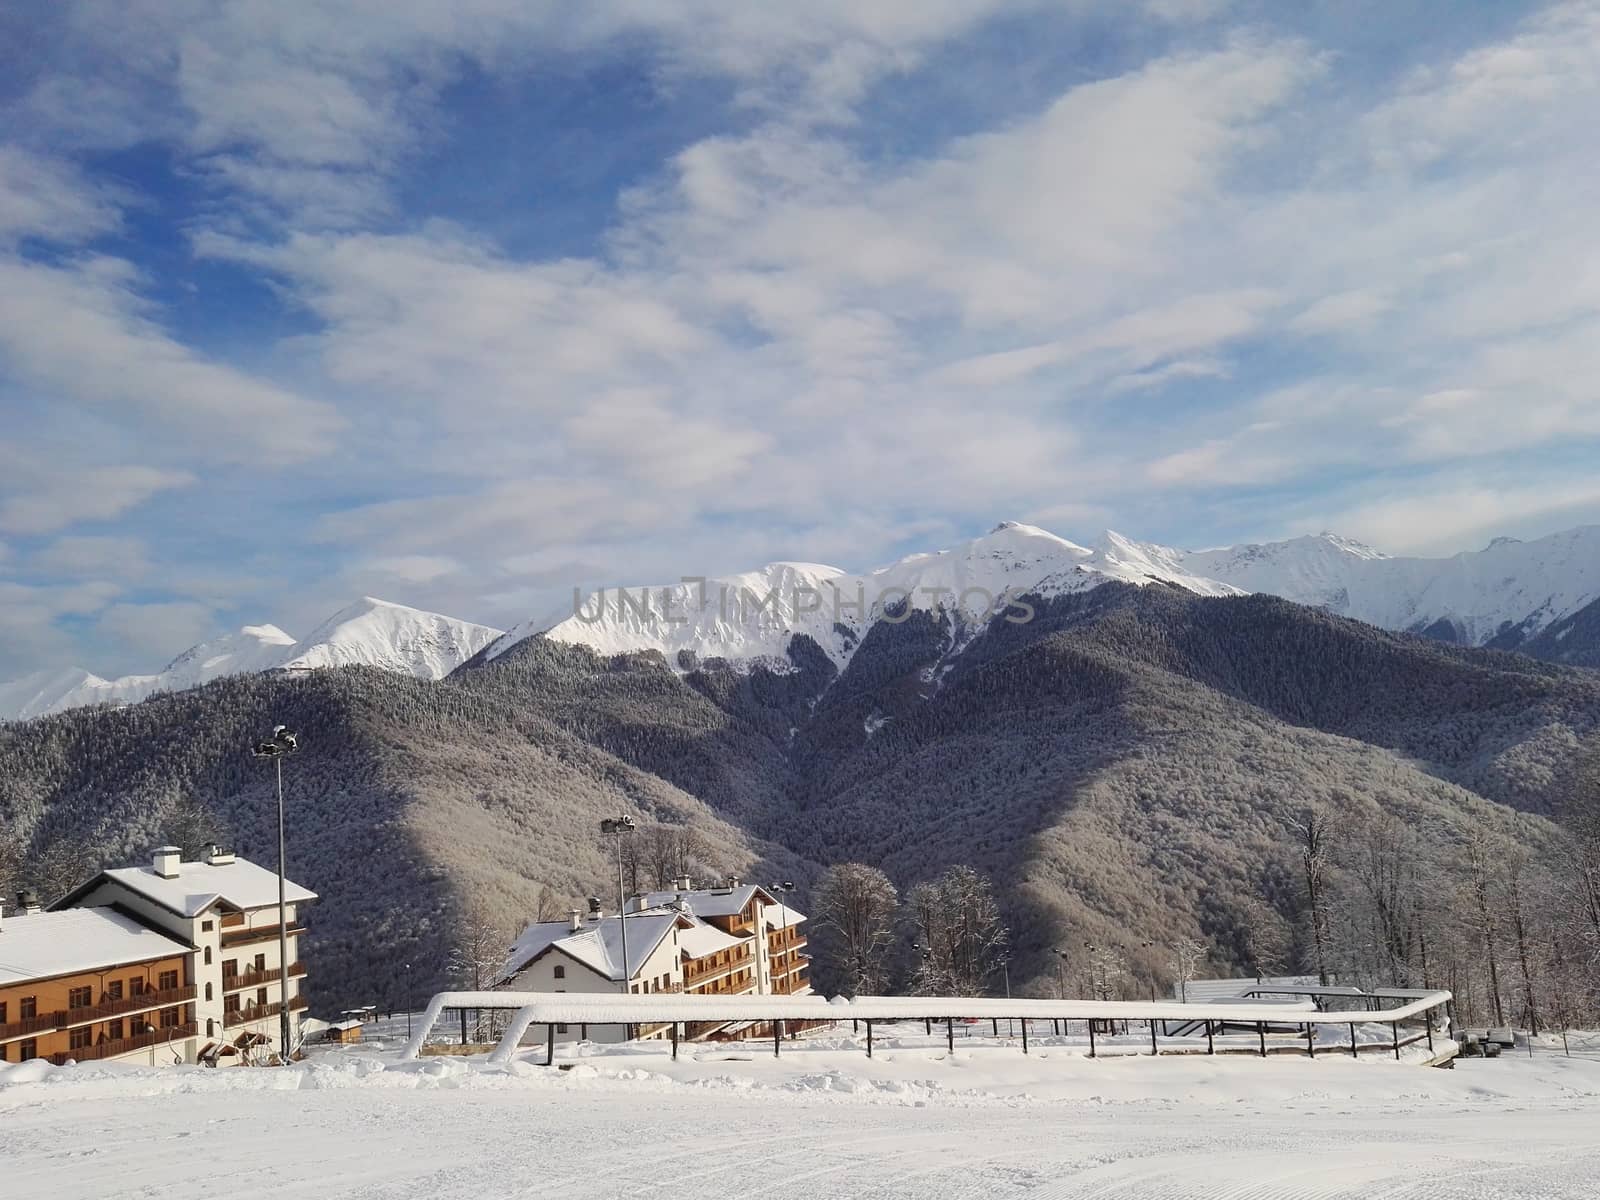 Winter ski resort mountain view hotels and slope. by galinasharapova